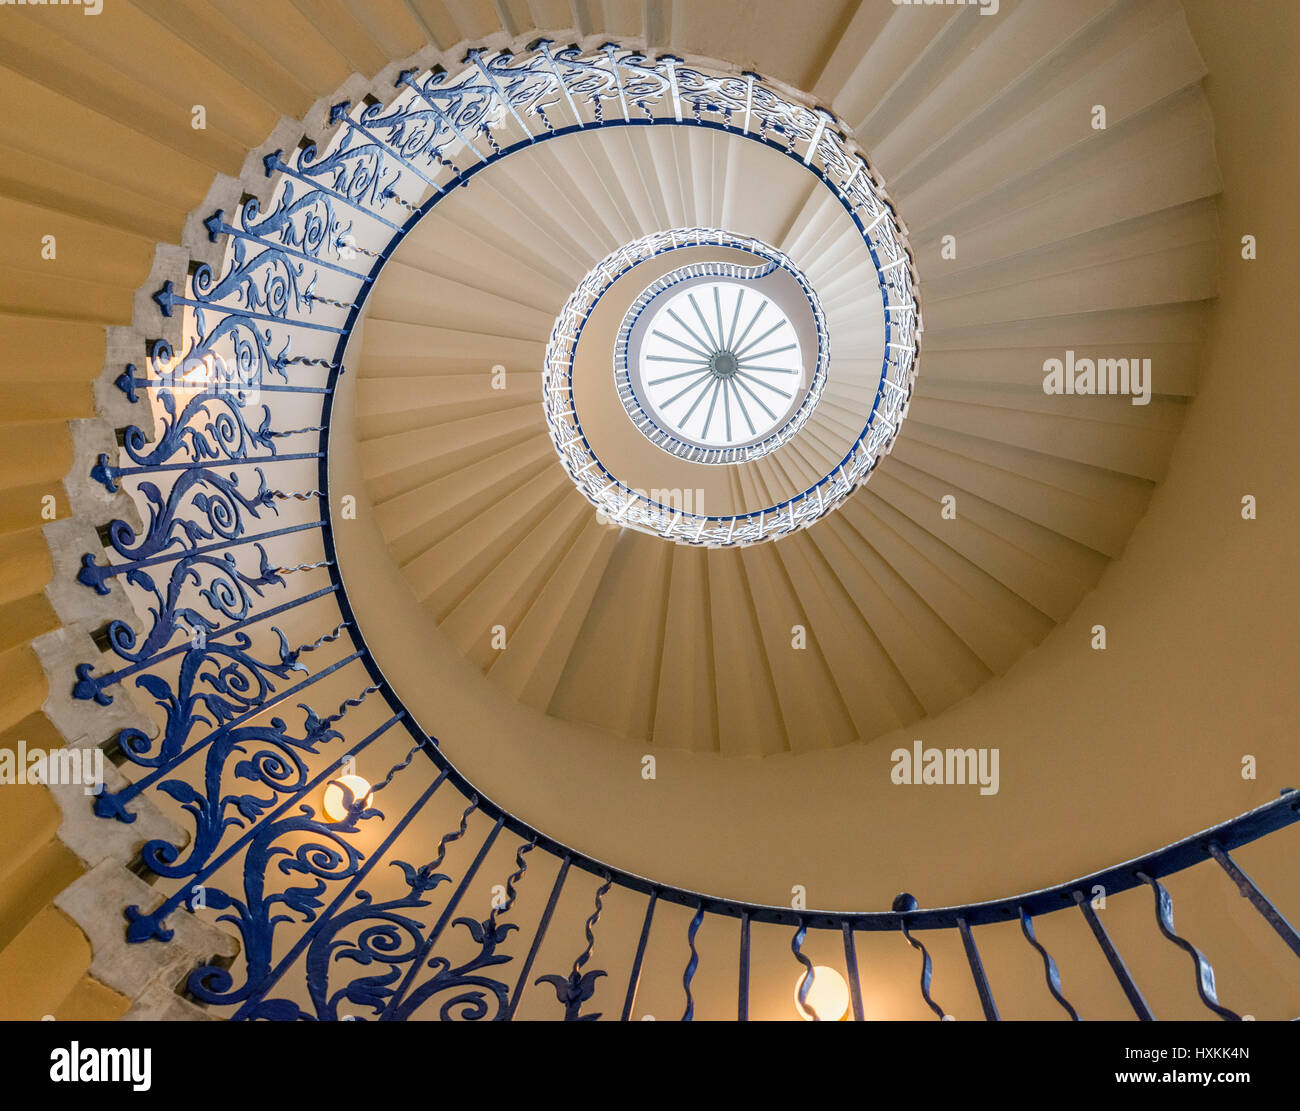 Die Tulpe-Treppe in Queens House, Greenwich, London, England, UK. Die Treppen sind die ersten zentral nicht unterstützte spiralförmige Treppe in England gebaut. Stockfoto